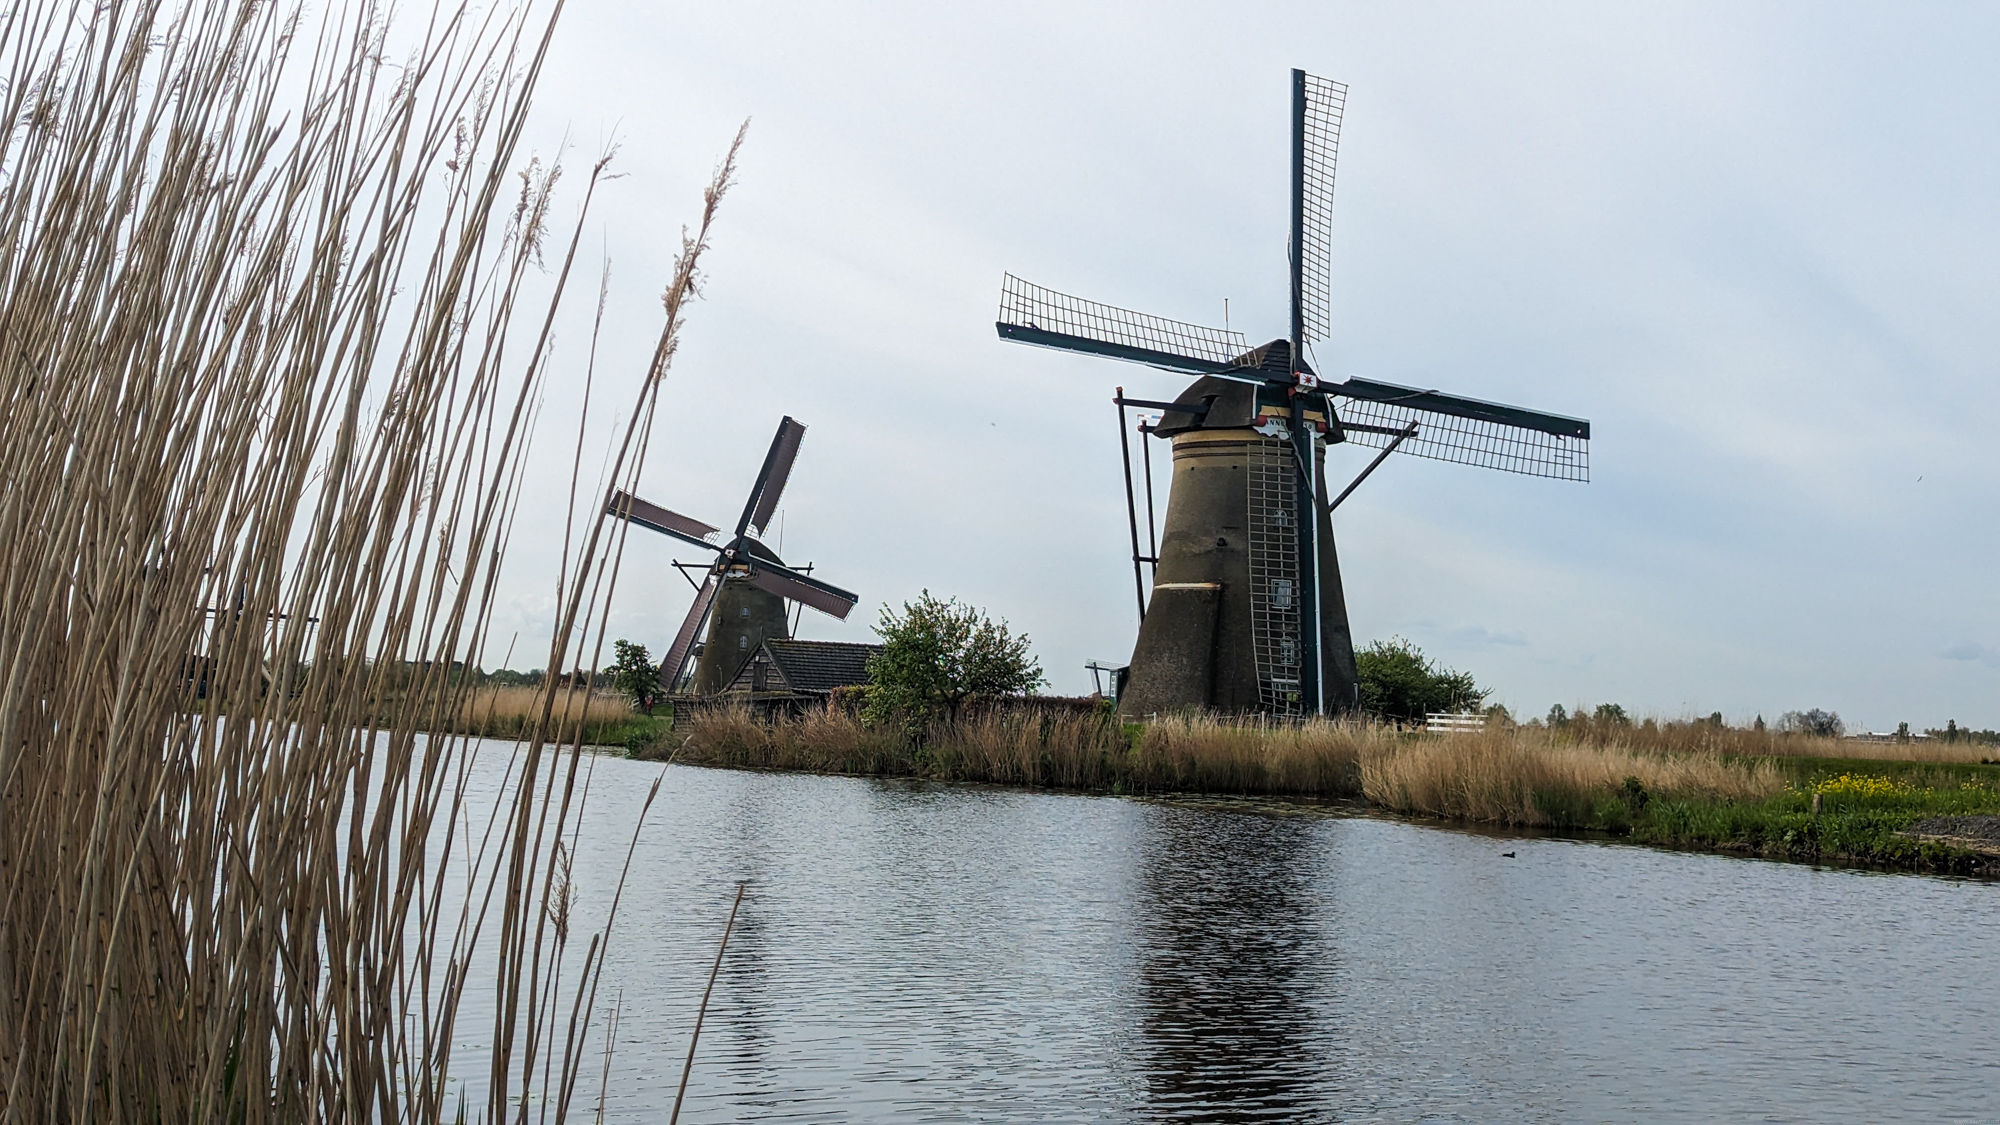 Kinderdijk je malá dedinka v Holandsku, ktorá je známa svojimi historickými veternými mlynmi.